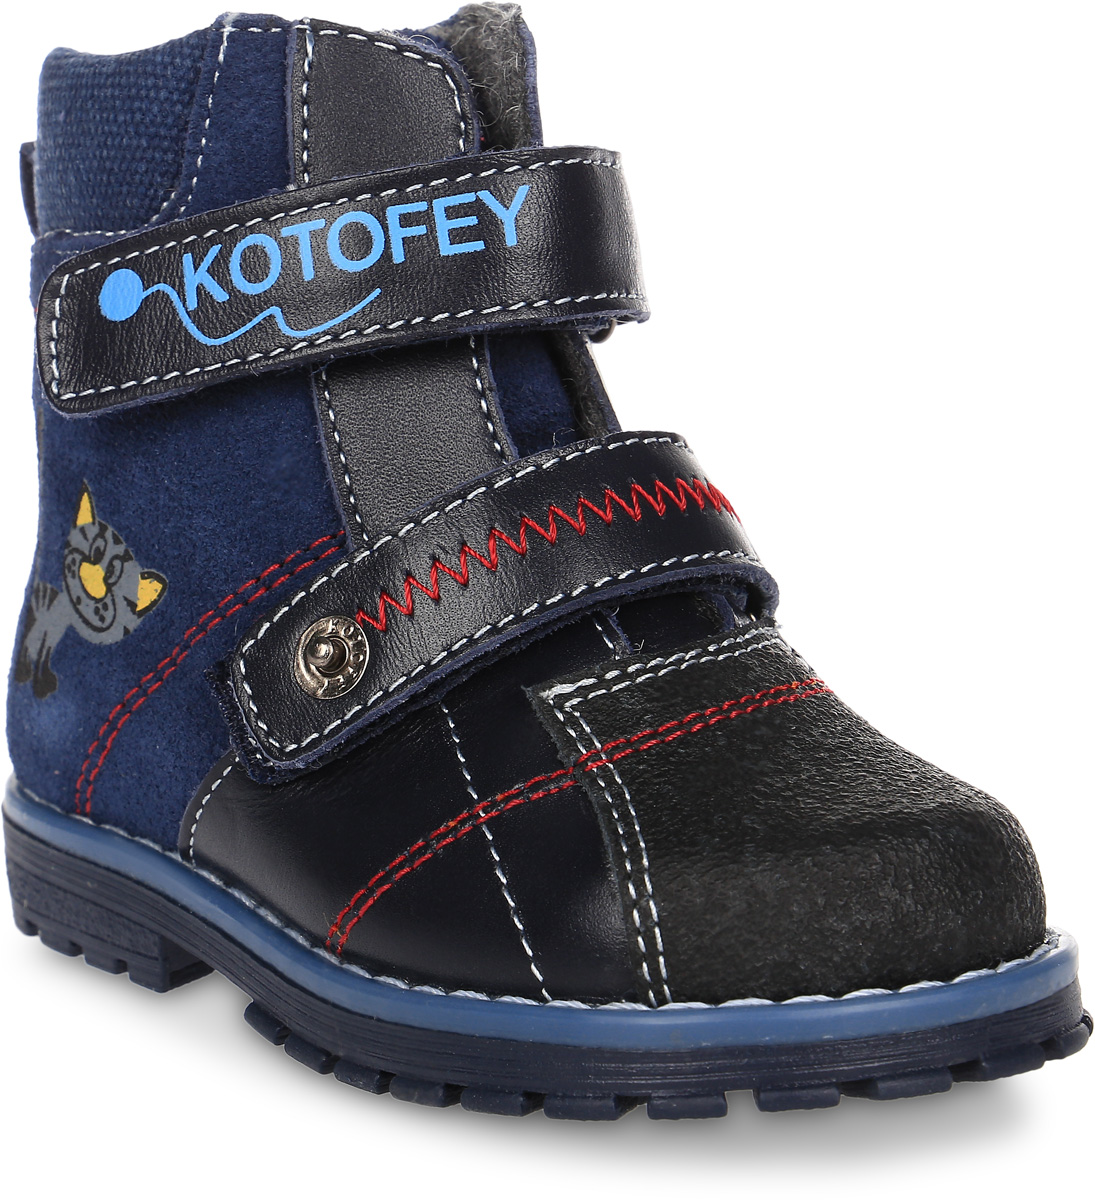 Ботинки для мальчика Котофей, цвет: синий. 152098-31. Размер 22